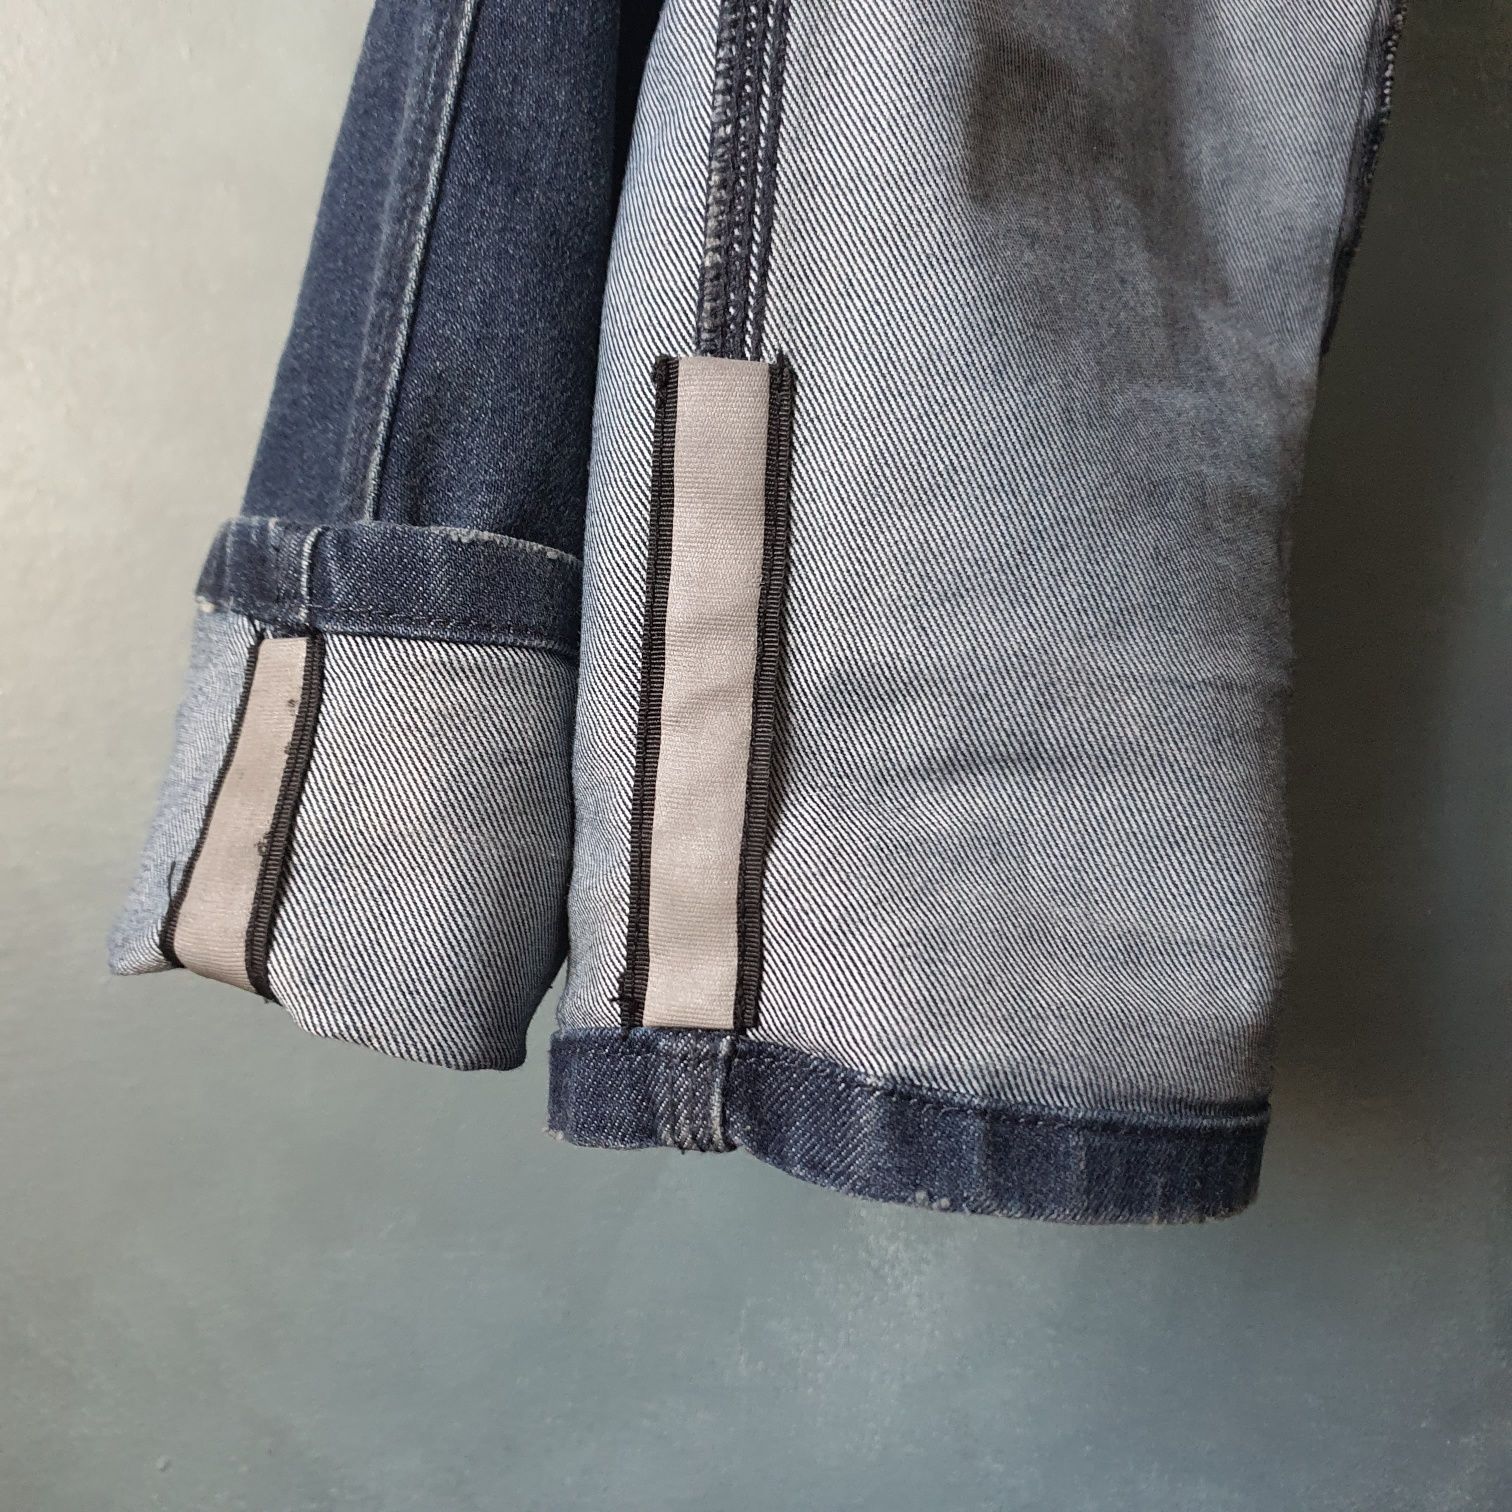 Spodnie motocyklowe CORDURA - Revit jeans austin tf  rozmiar 30